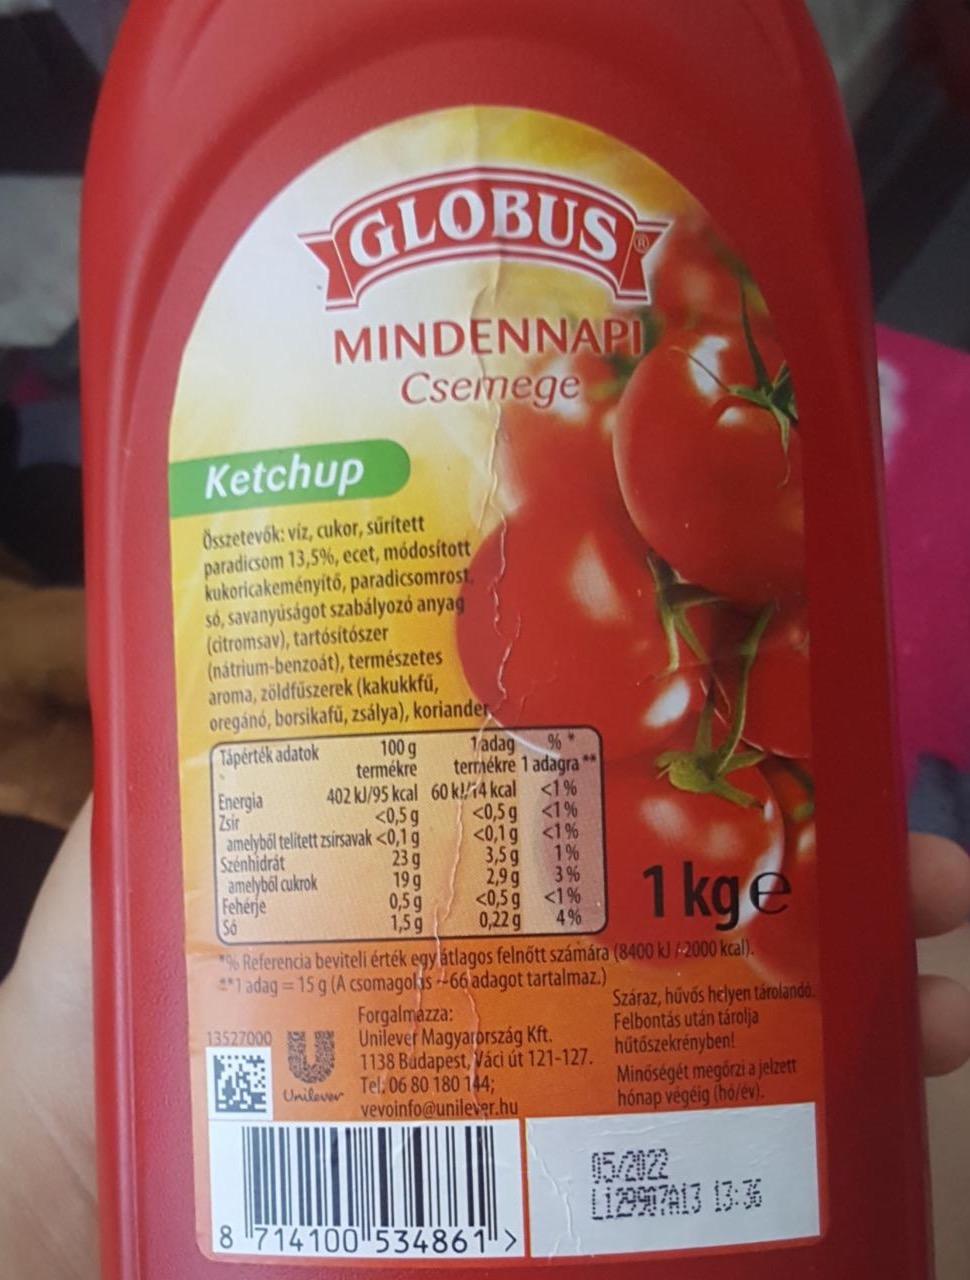 Képek - Mindennapi csemege ketchup Globus